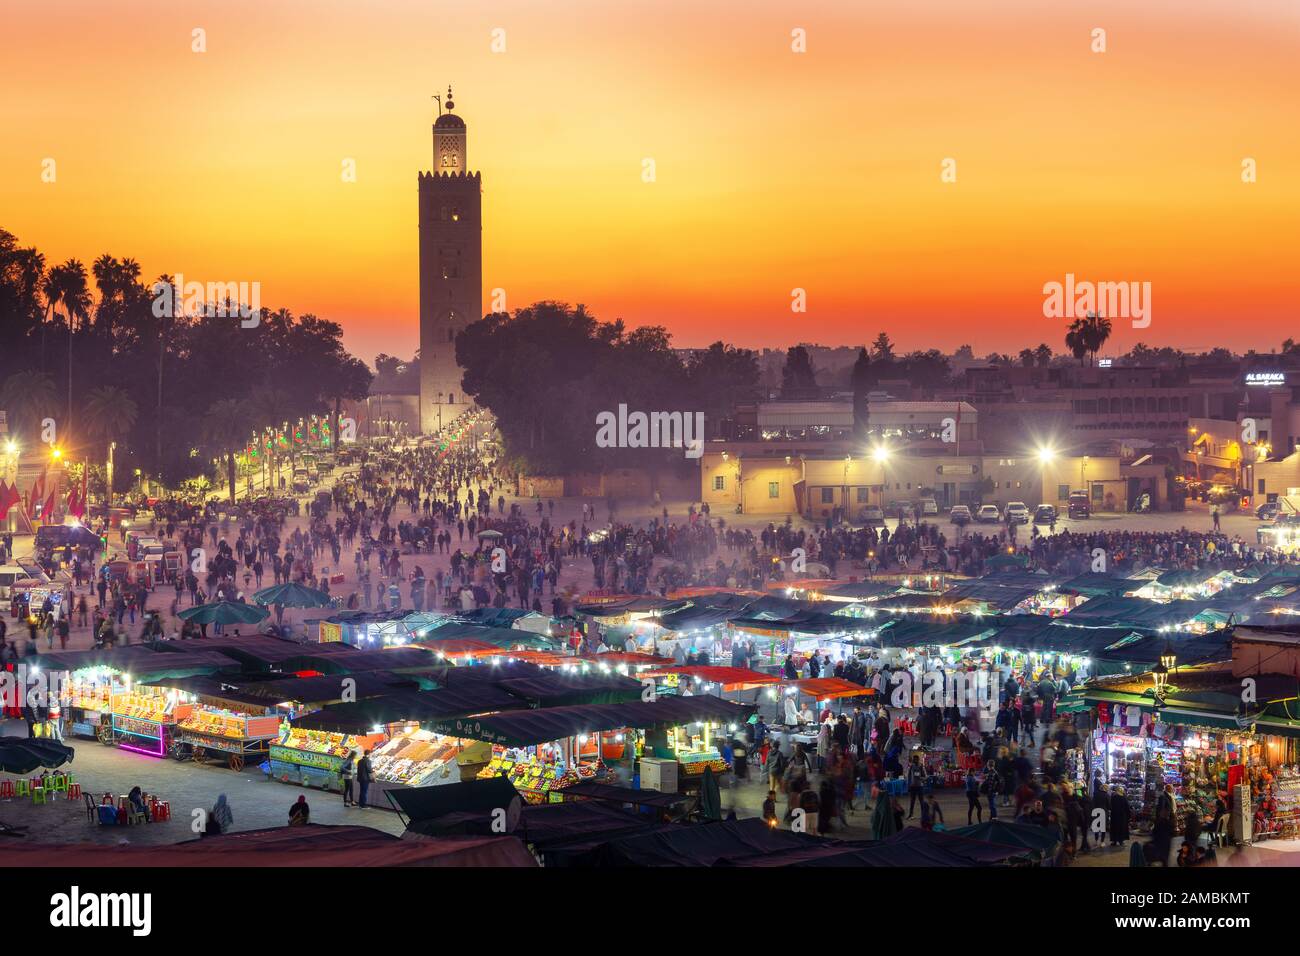 Plaza del mercado Jamaa el Fna con mezquita Koutoubia, Marrakech, Marruecos, norte de África Foto de stock